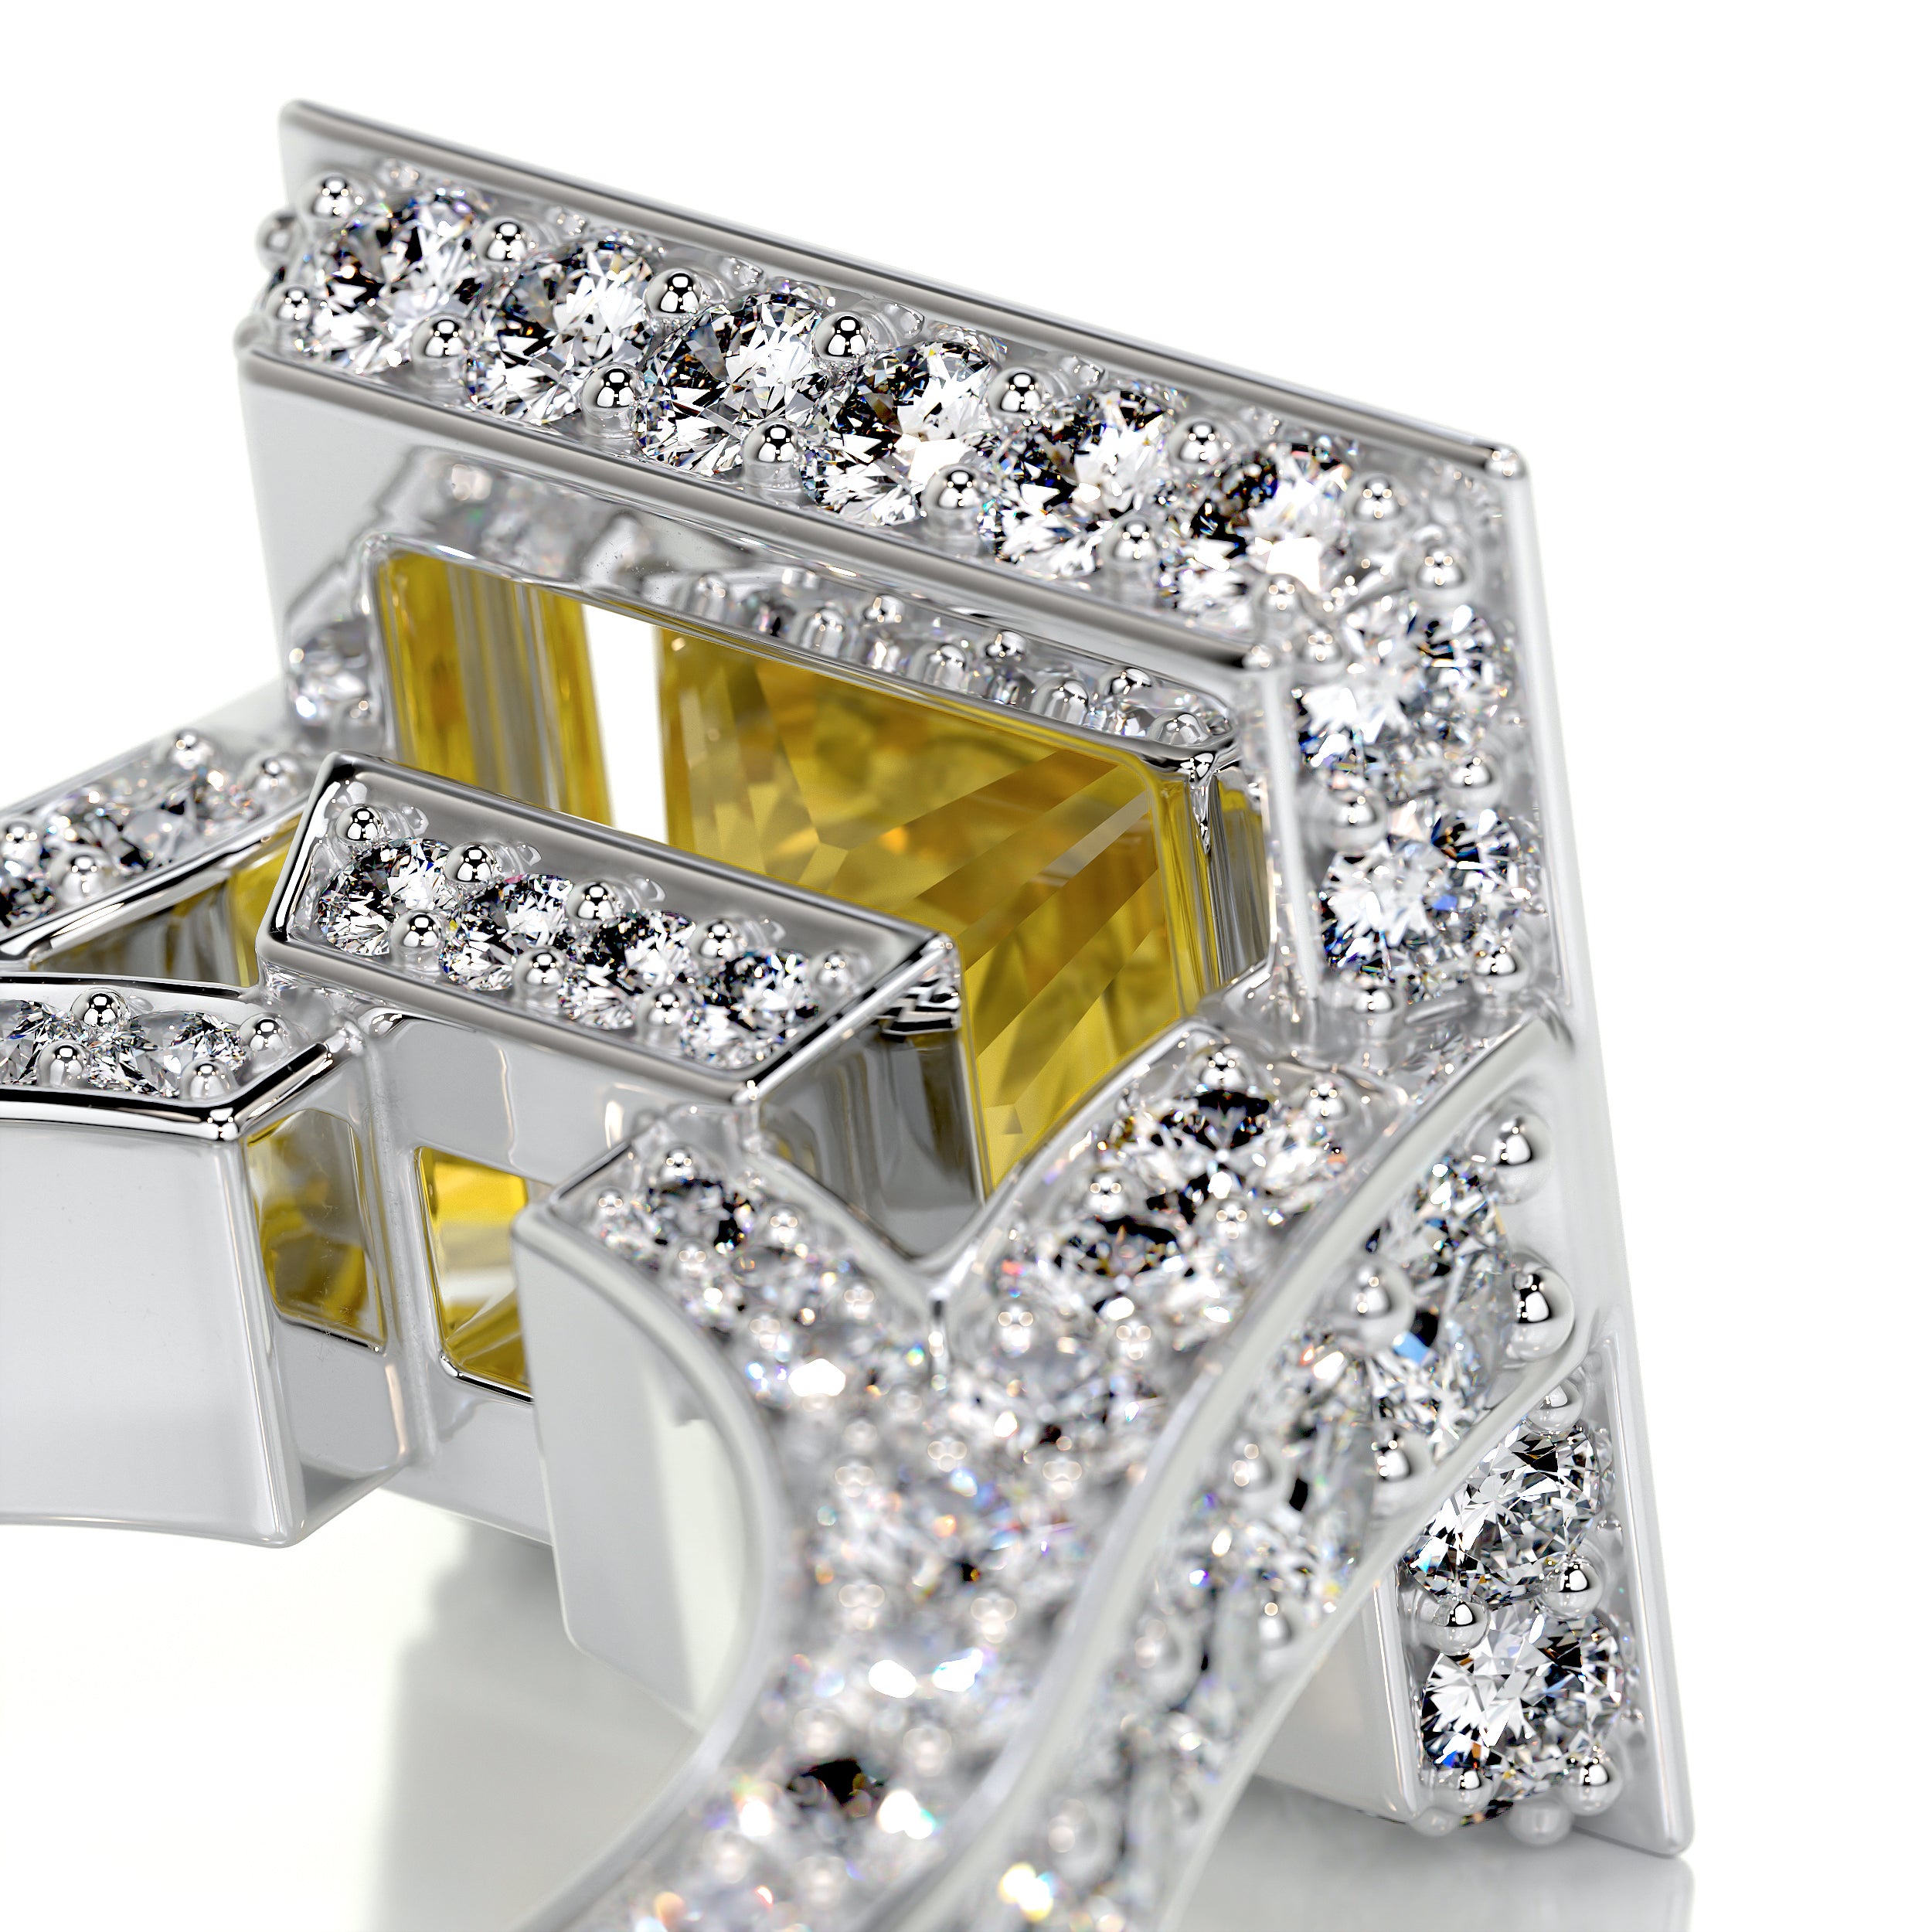 Freya Diamond Engagement Ring   (4.5 Carat) -Platinum